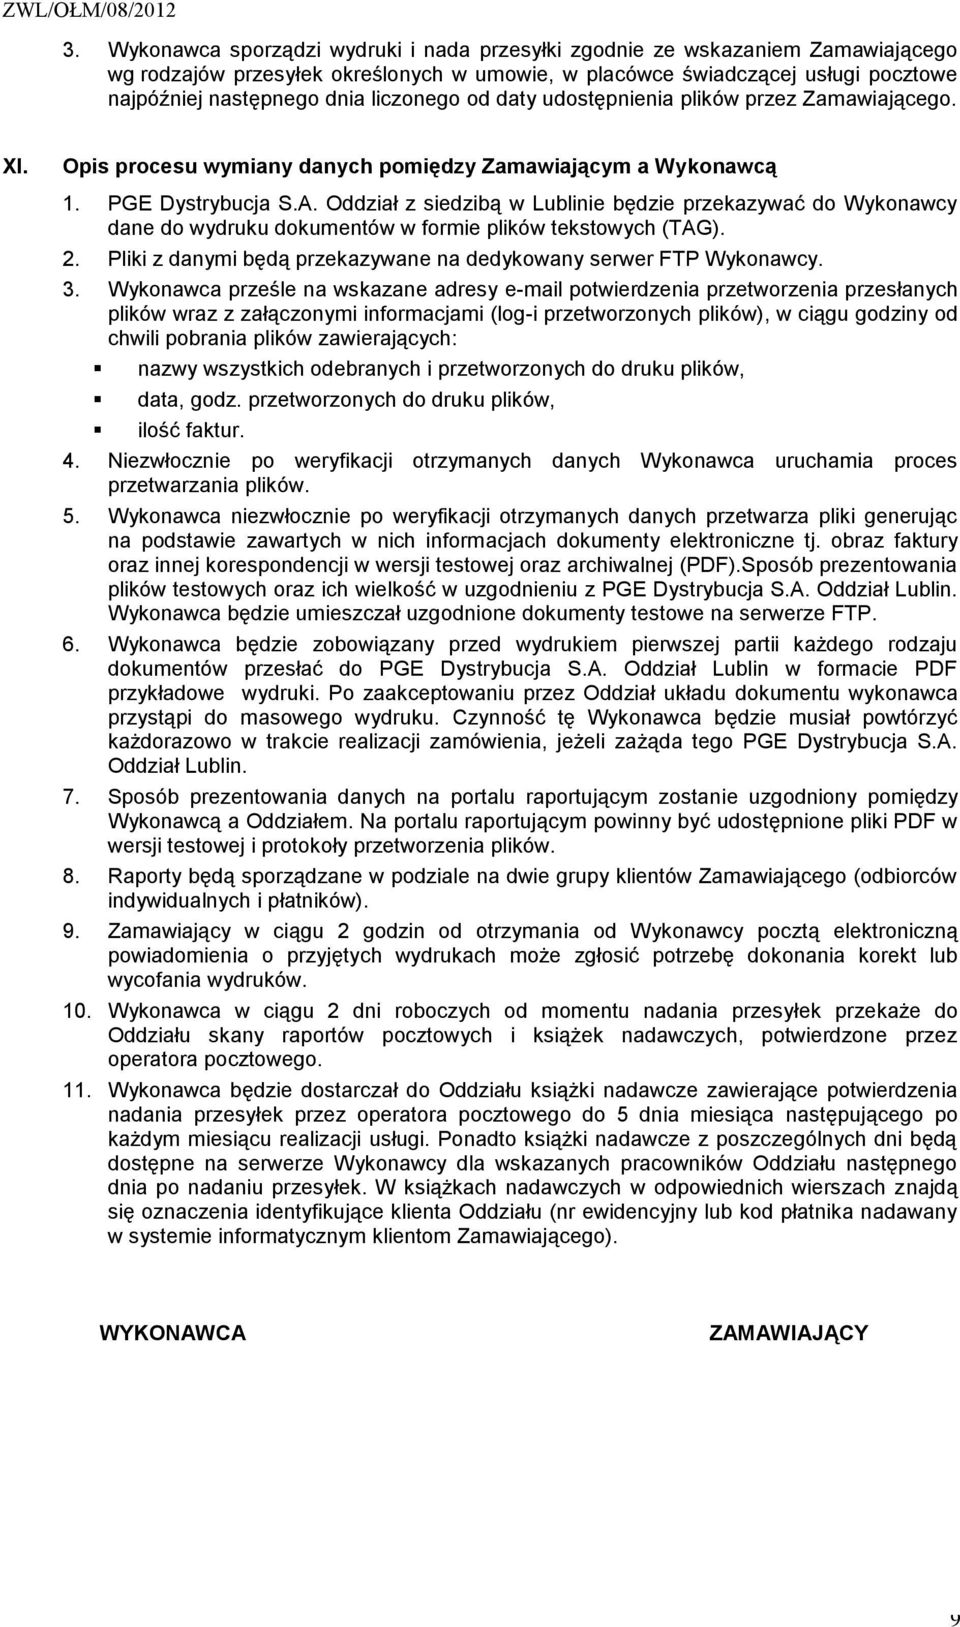 Oddział z siedzibą w Lublinie będzie przekazywać do Wykonawcy dane do wydruku dokumentów w formie plików tekstowych (TAG). 2. Pliki z danymi będą przekazywane na dedykowany serwer FTP Wykonawcy. 3.